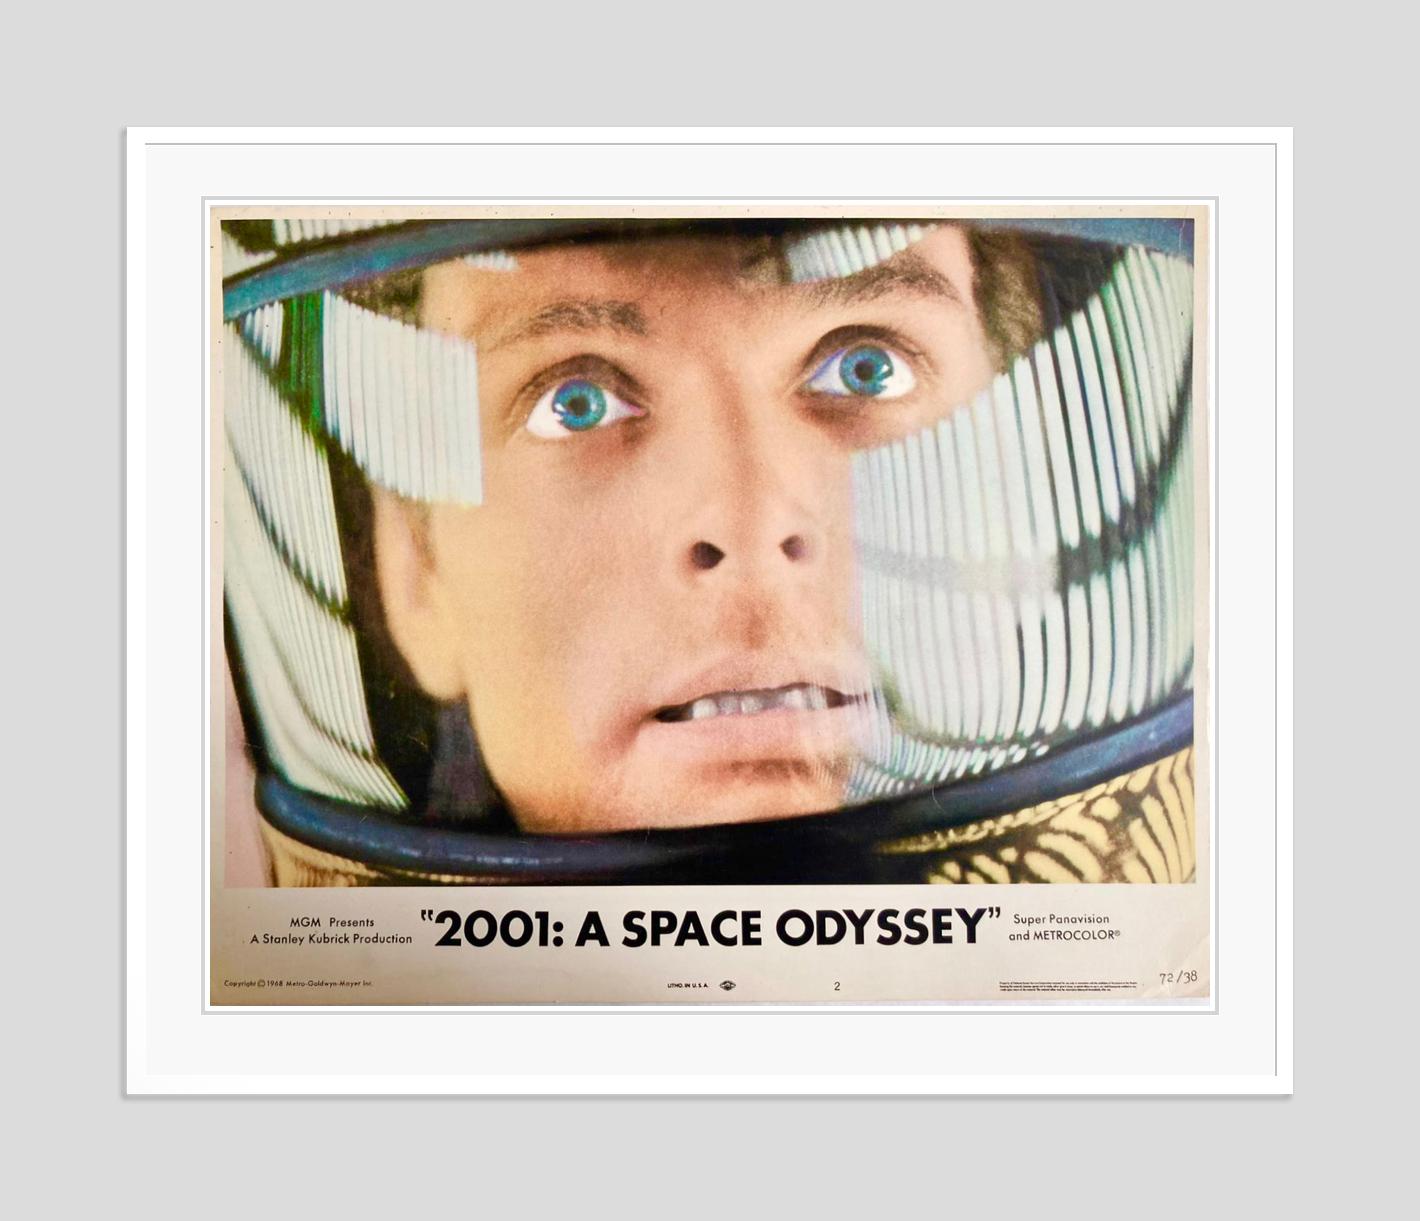 2001 A Space Odyssey - Original Vintage 1968 Movie Film Cinema Lobby Card  - Print by Unknown